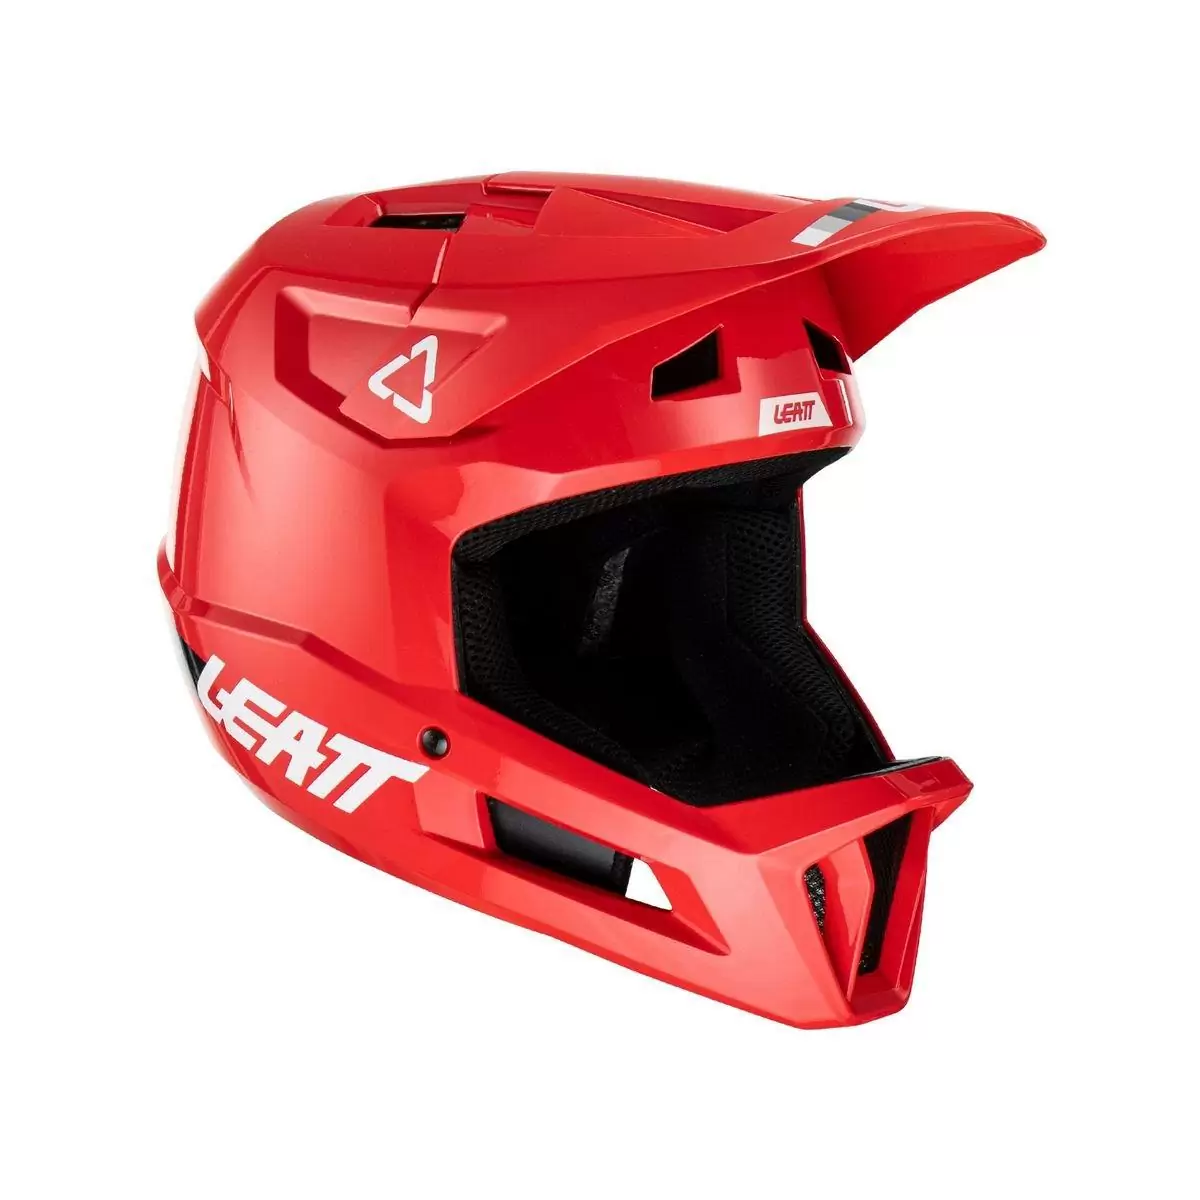 Gravity 1.0 MTB Fullface Helmet Red Size XS (53-54cm) #3